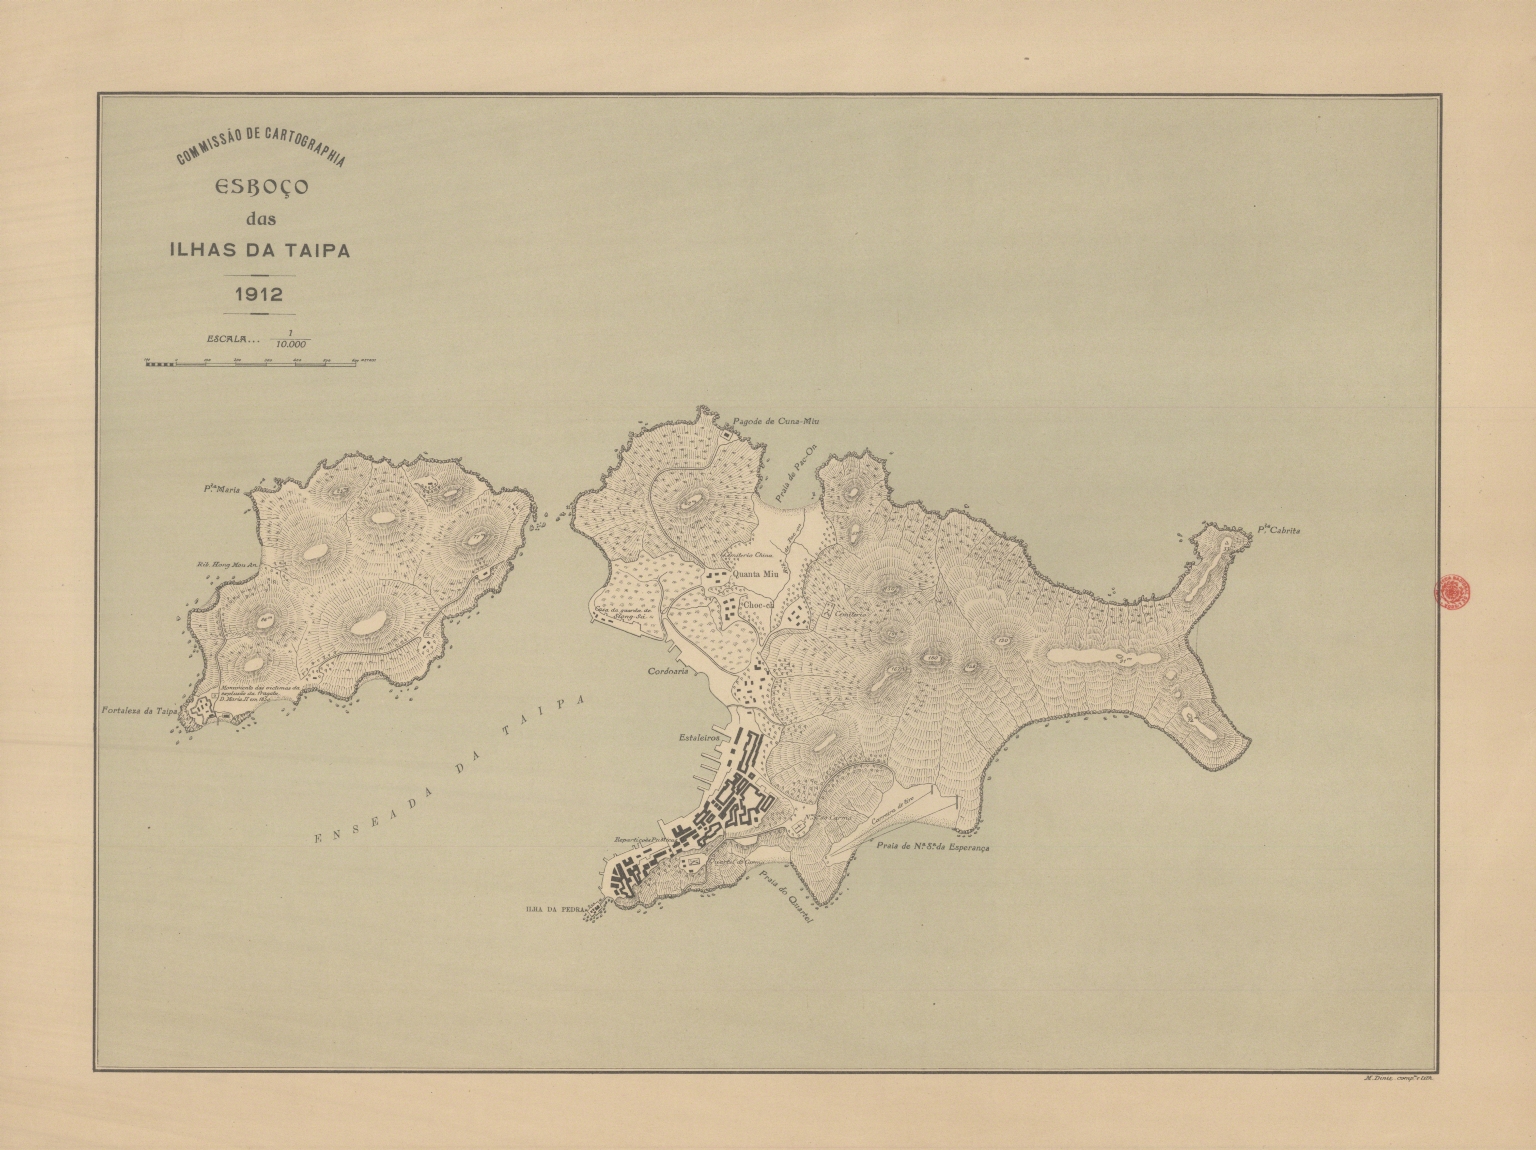 Esboço das Ilhas da Taipa